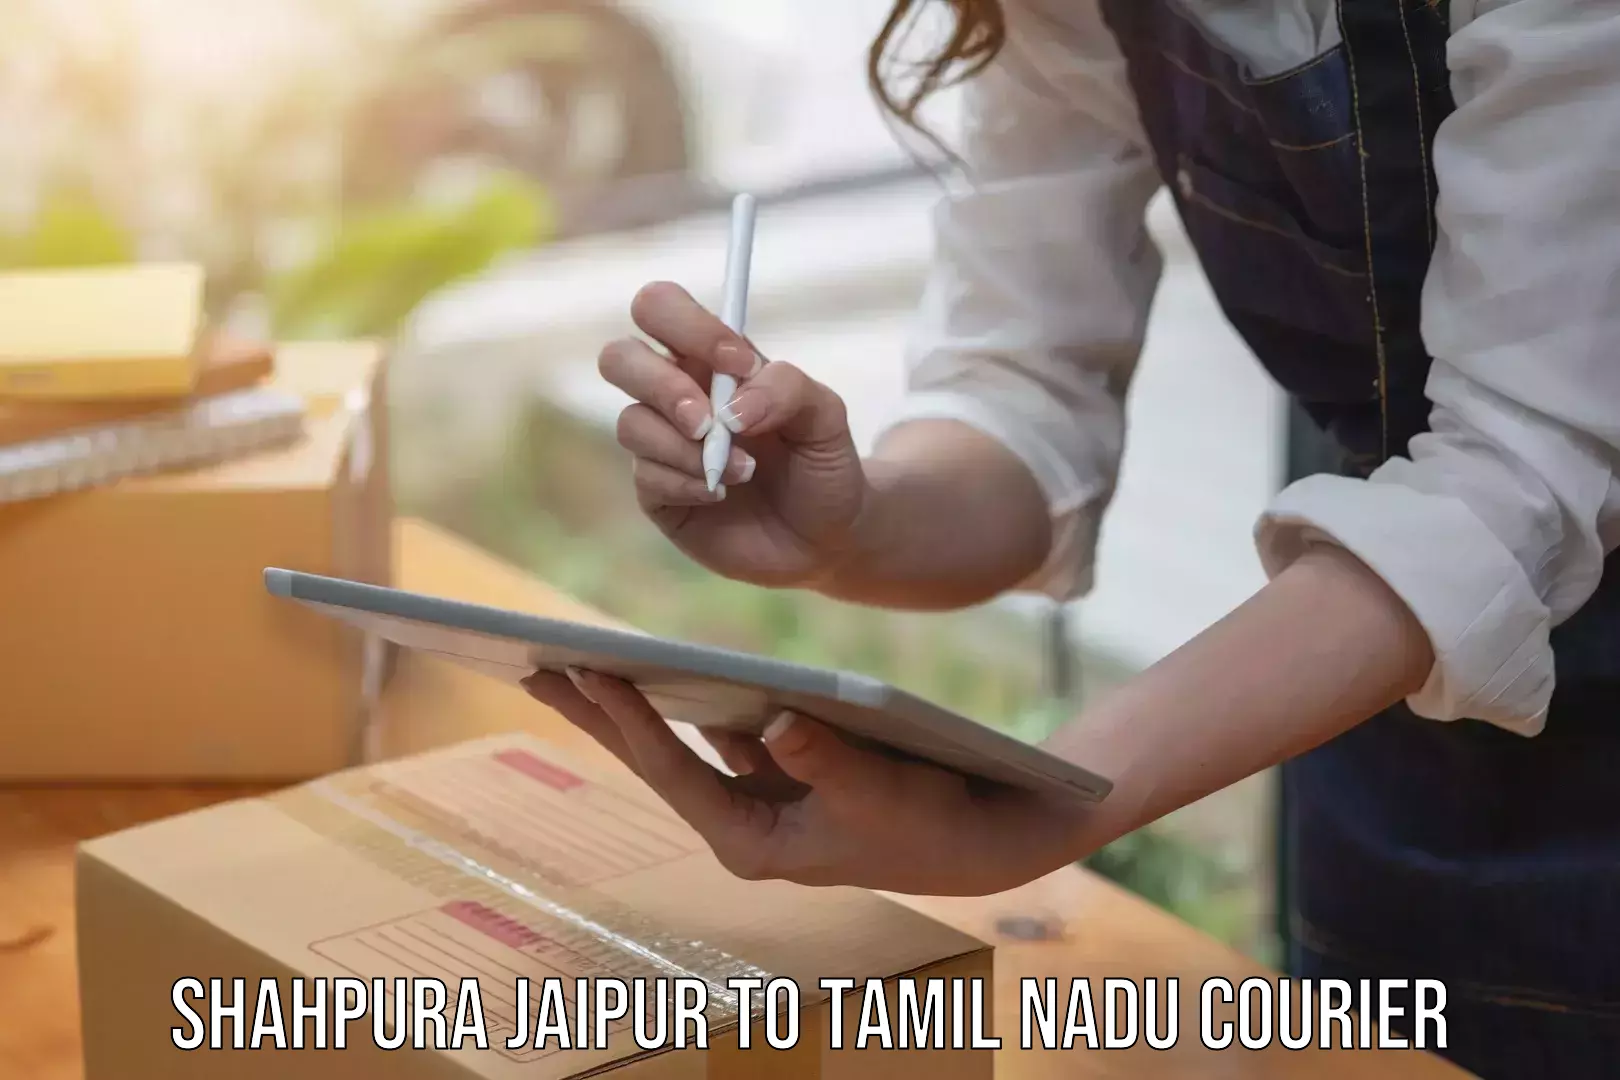 Affordable parcel service Shahpura Jaipur to Tamil Nadu